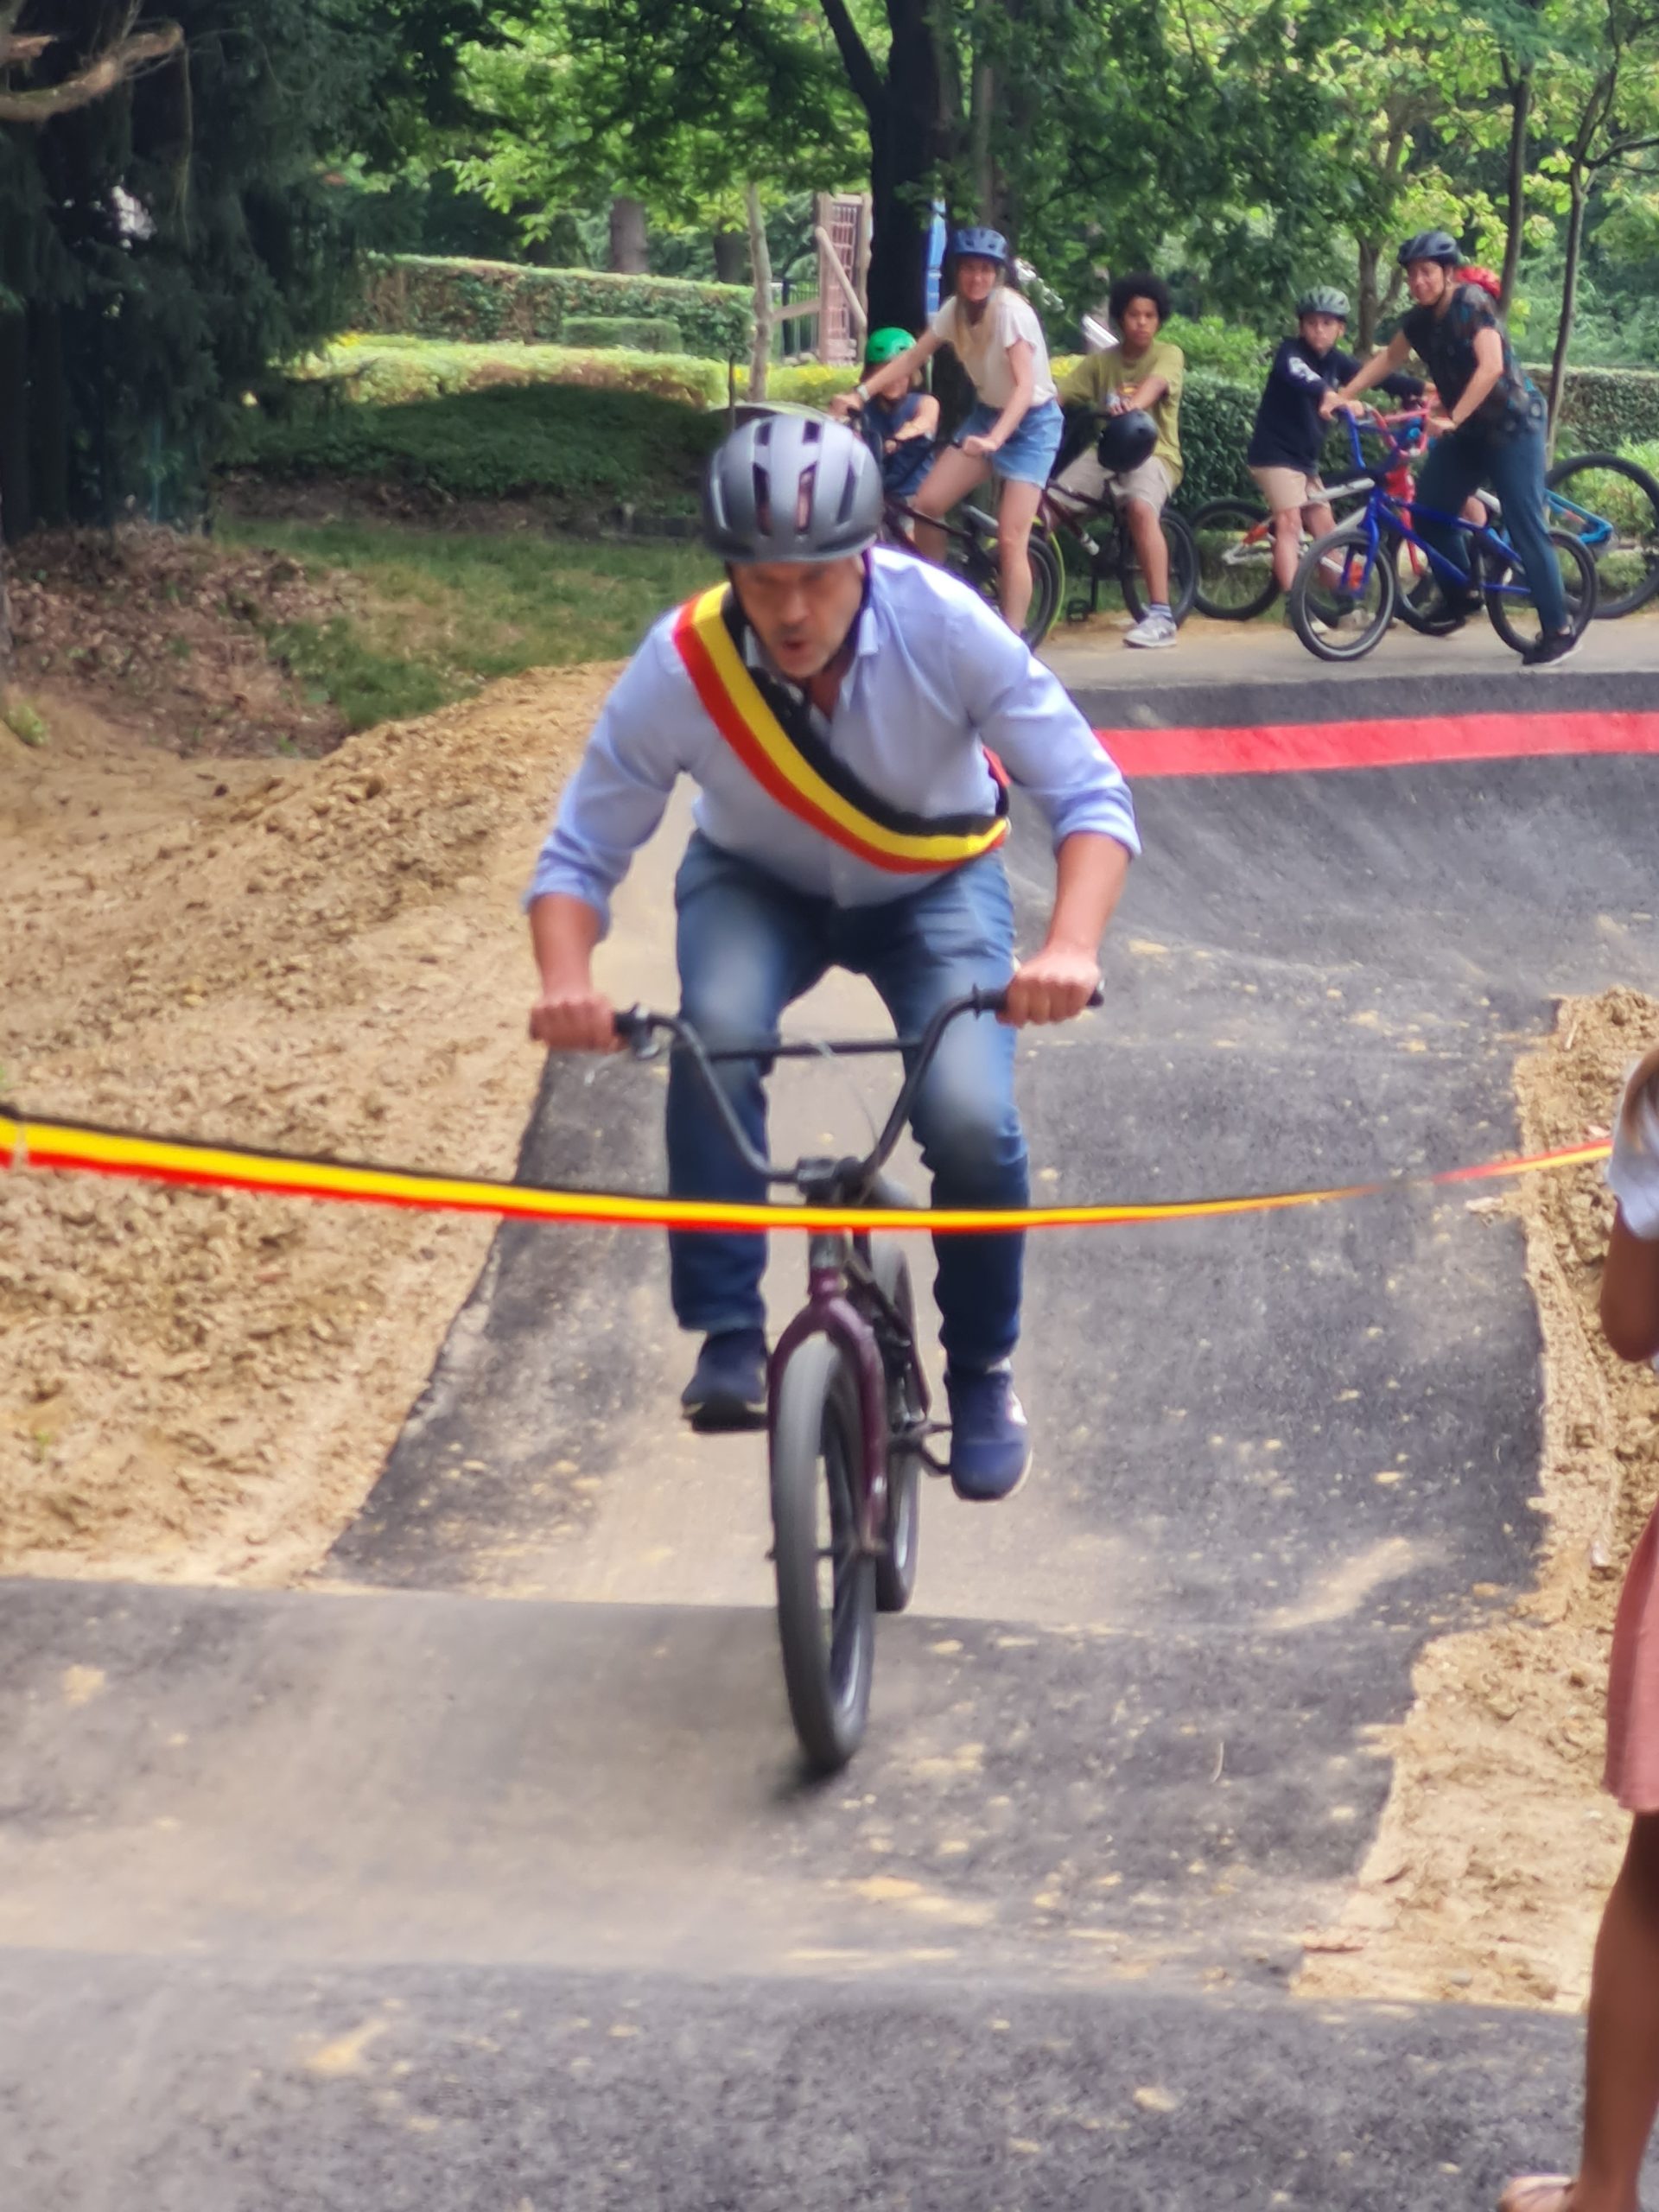 Burgemeester Bart Clerckx opent op BMX-manier de track